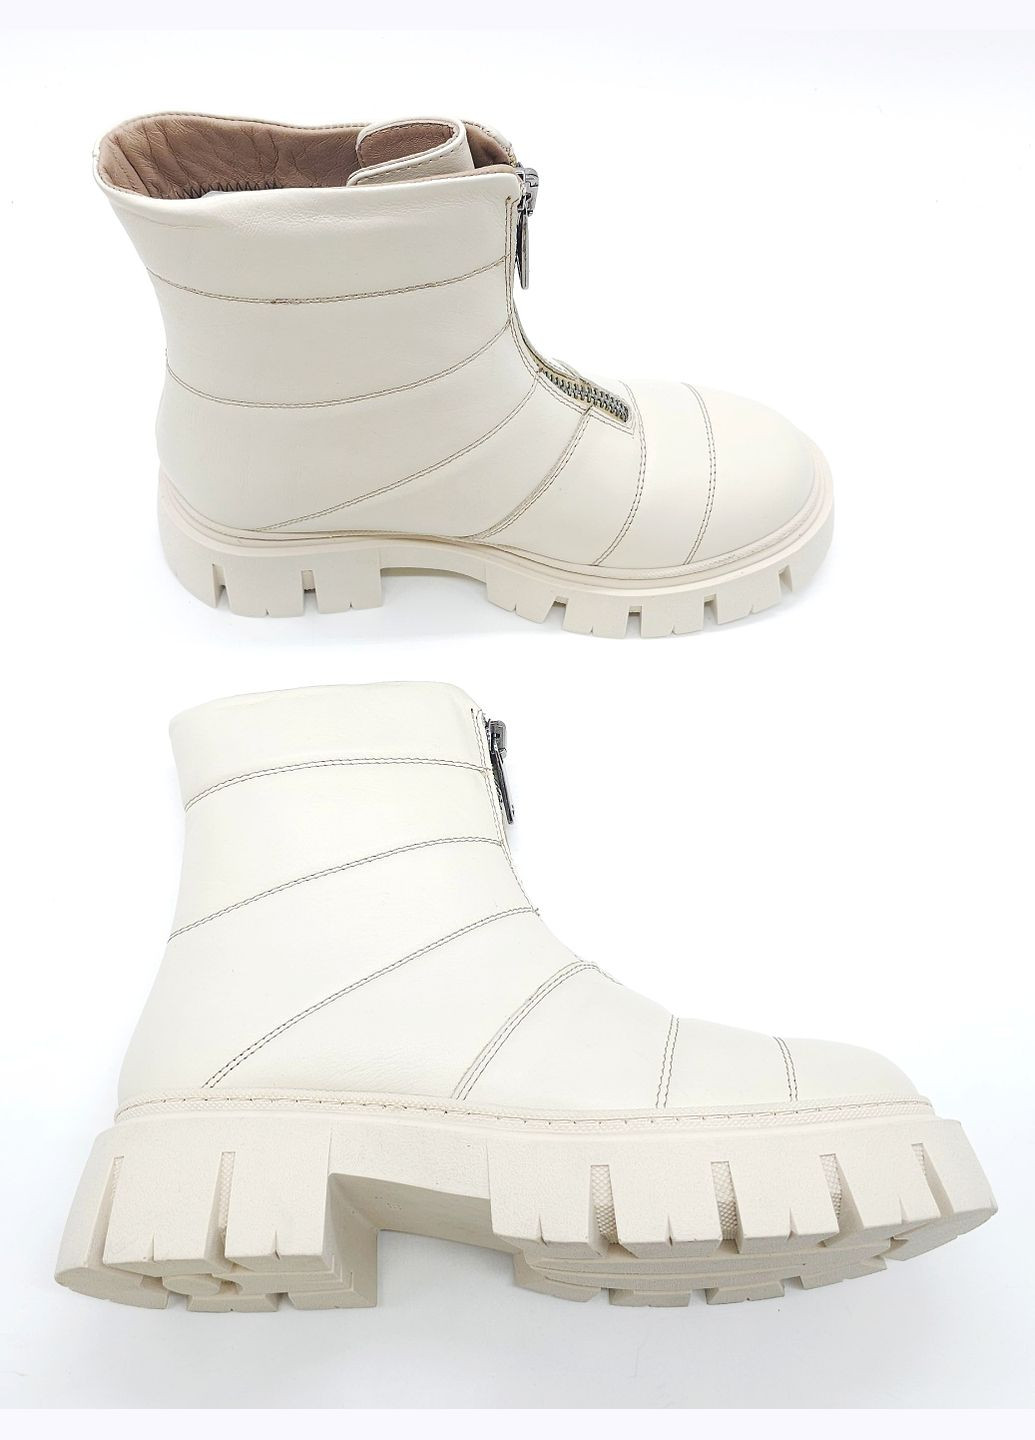 Осенние женские ботинки зимние бежевые кожаные at-21-2 23,5 см (р) ALTURA